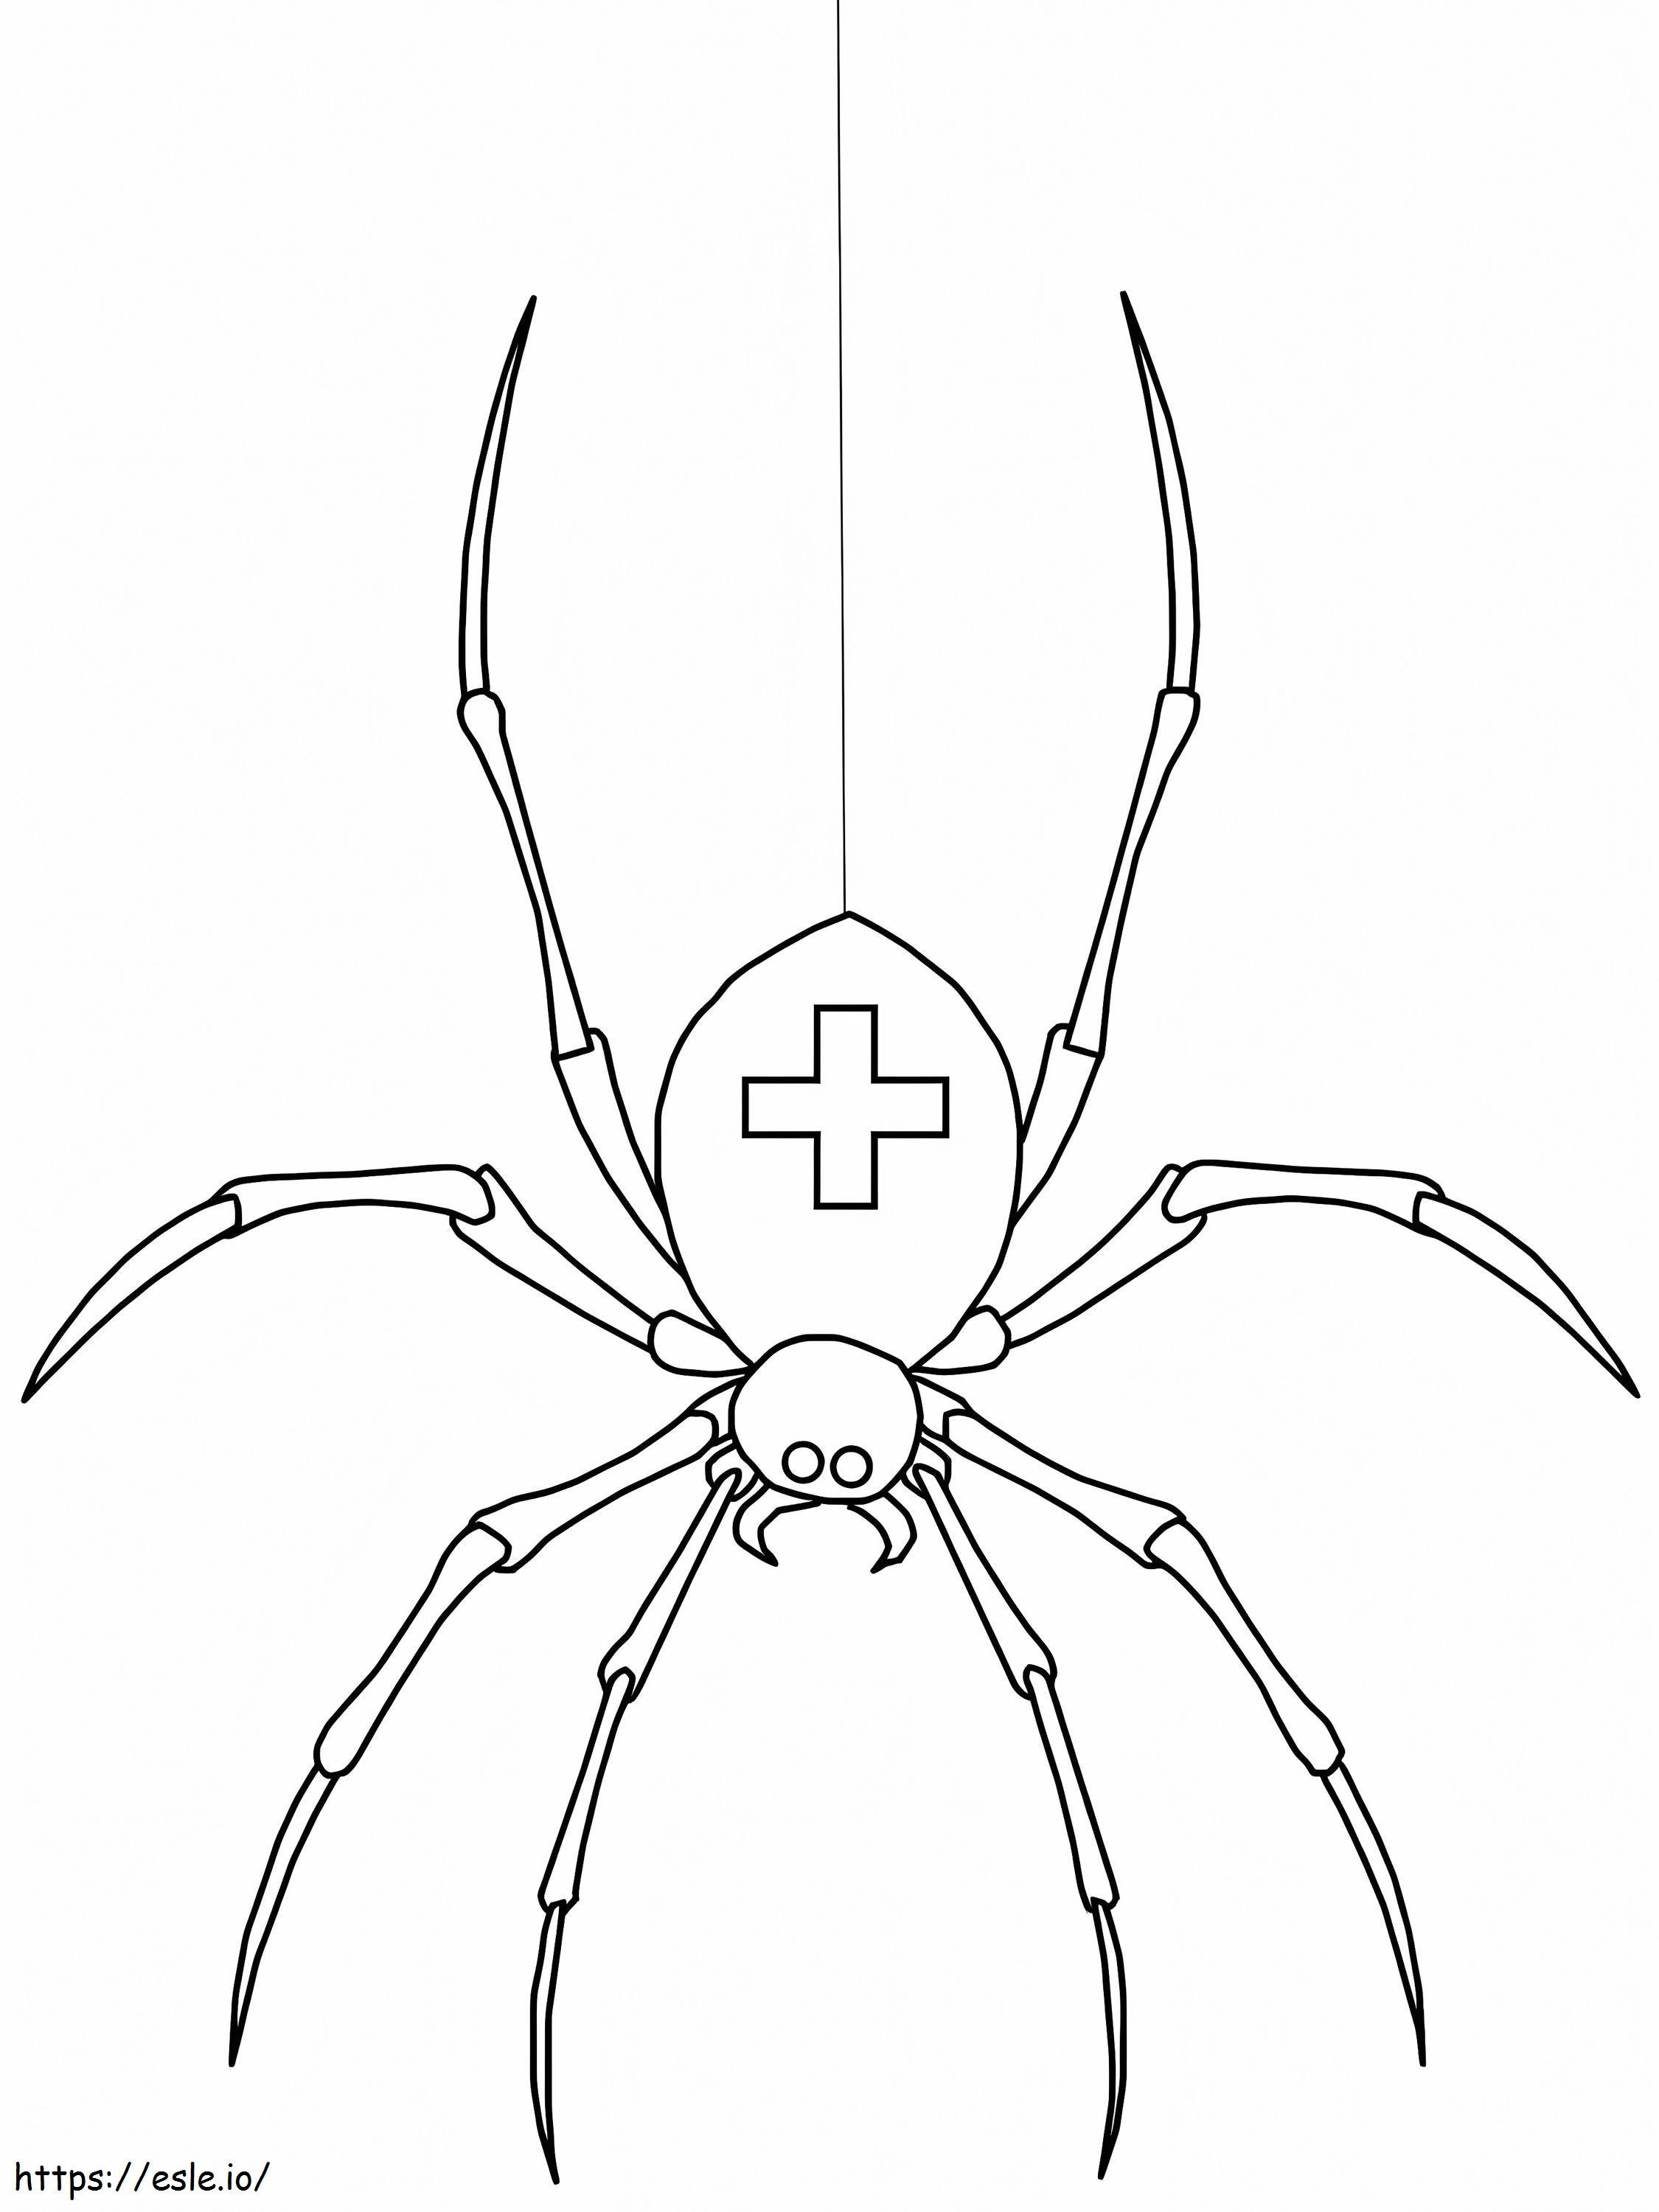 Medizinische Spinne ausmalbilder